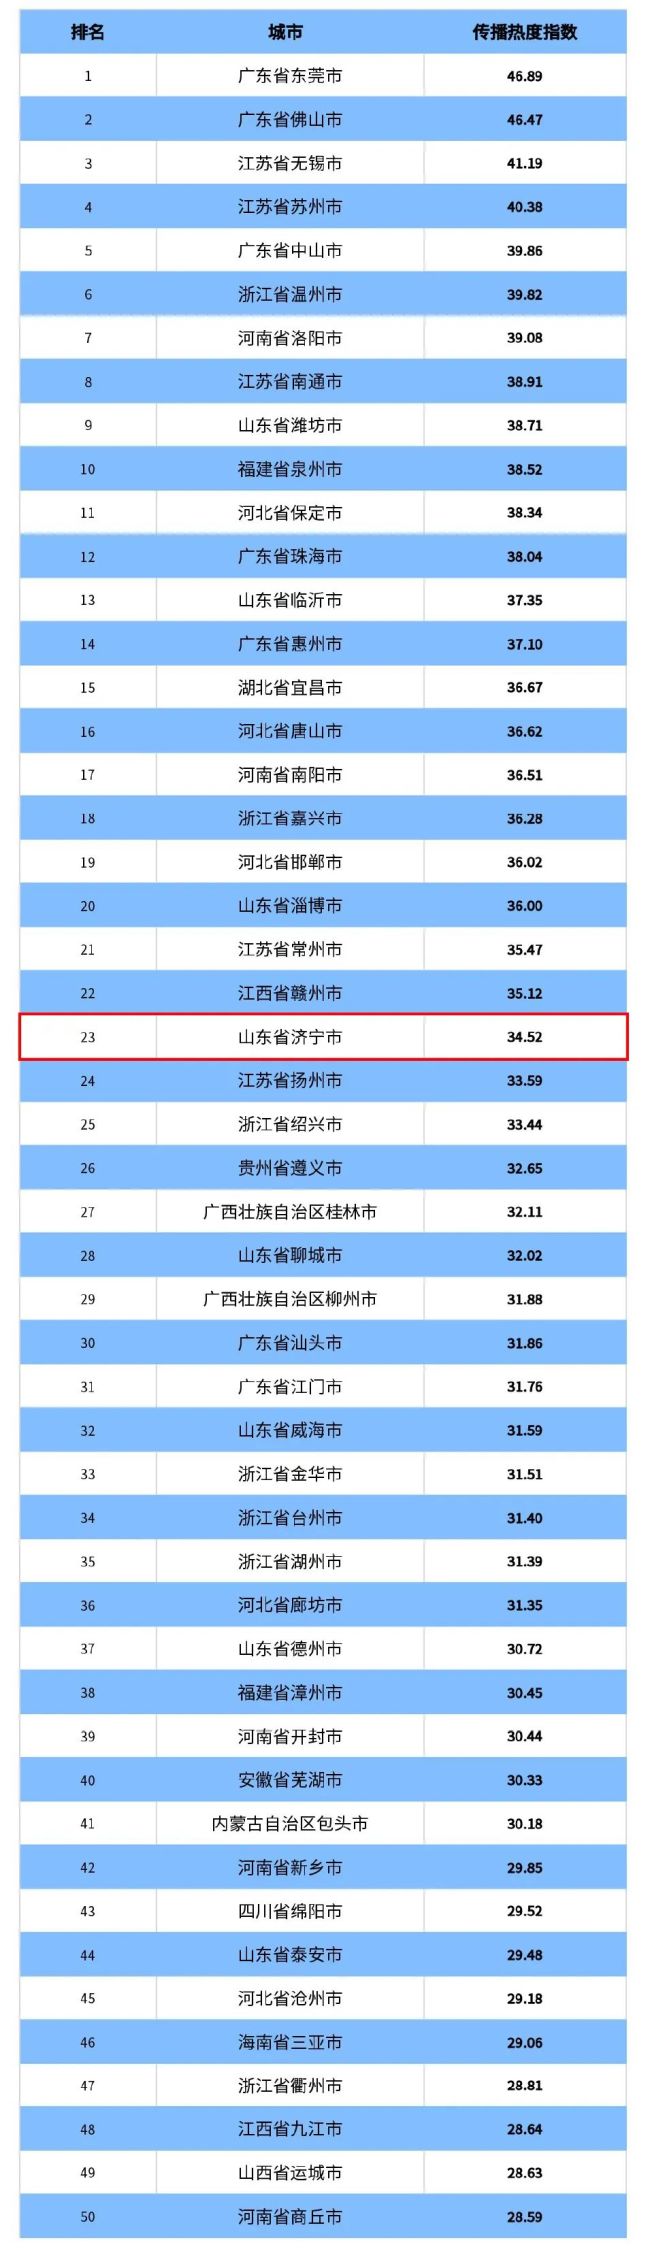 2022全国城市传播热度指数揭晓，济宁市位居第23位